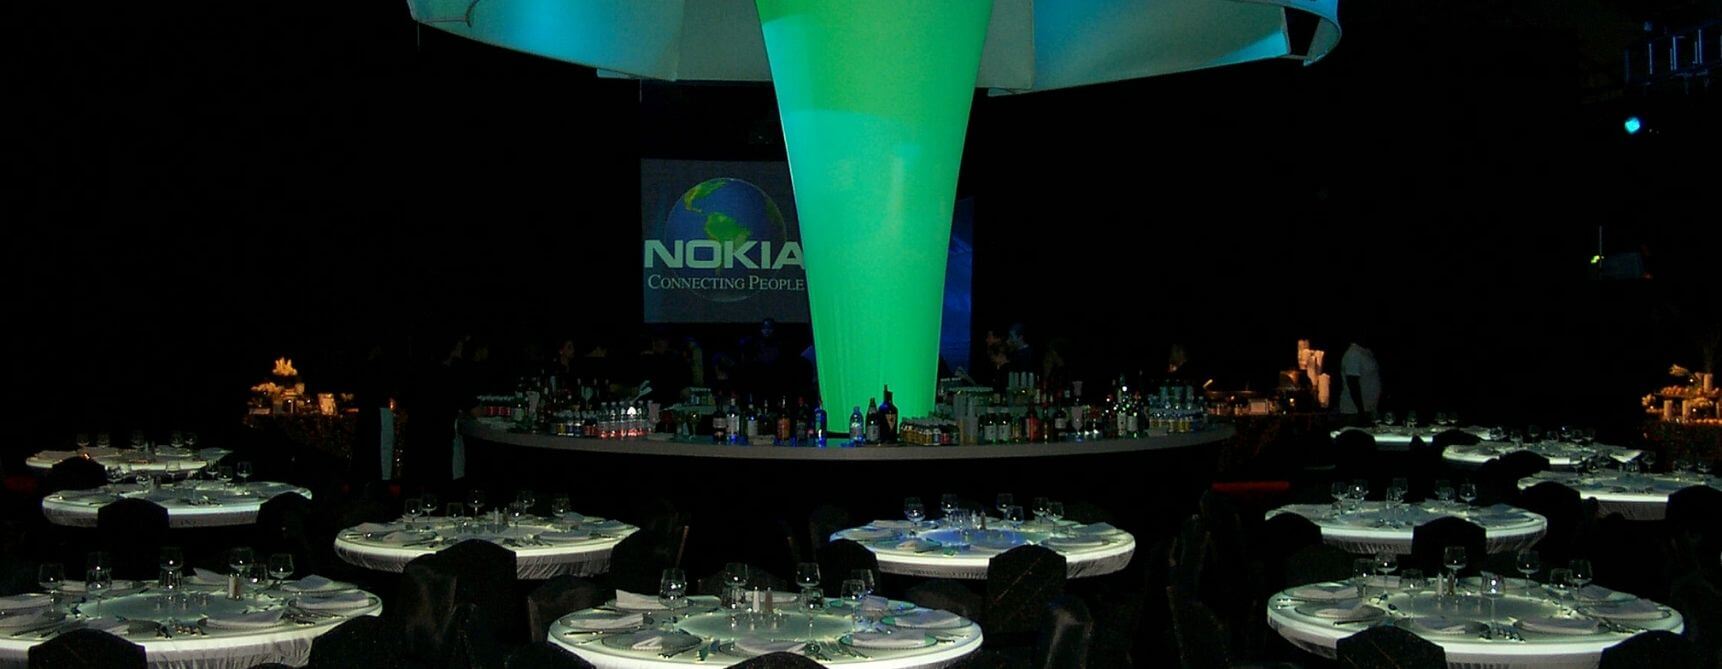 4 Nokia Marketing Event